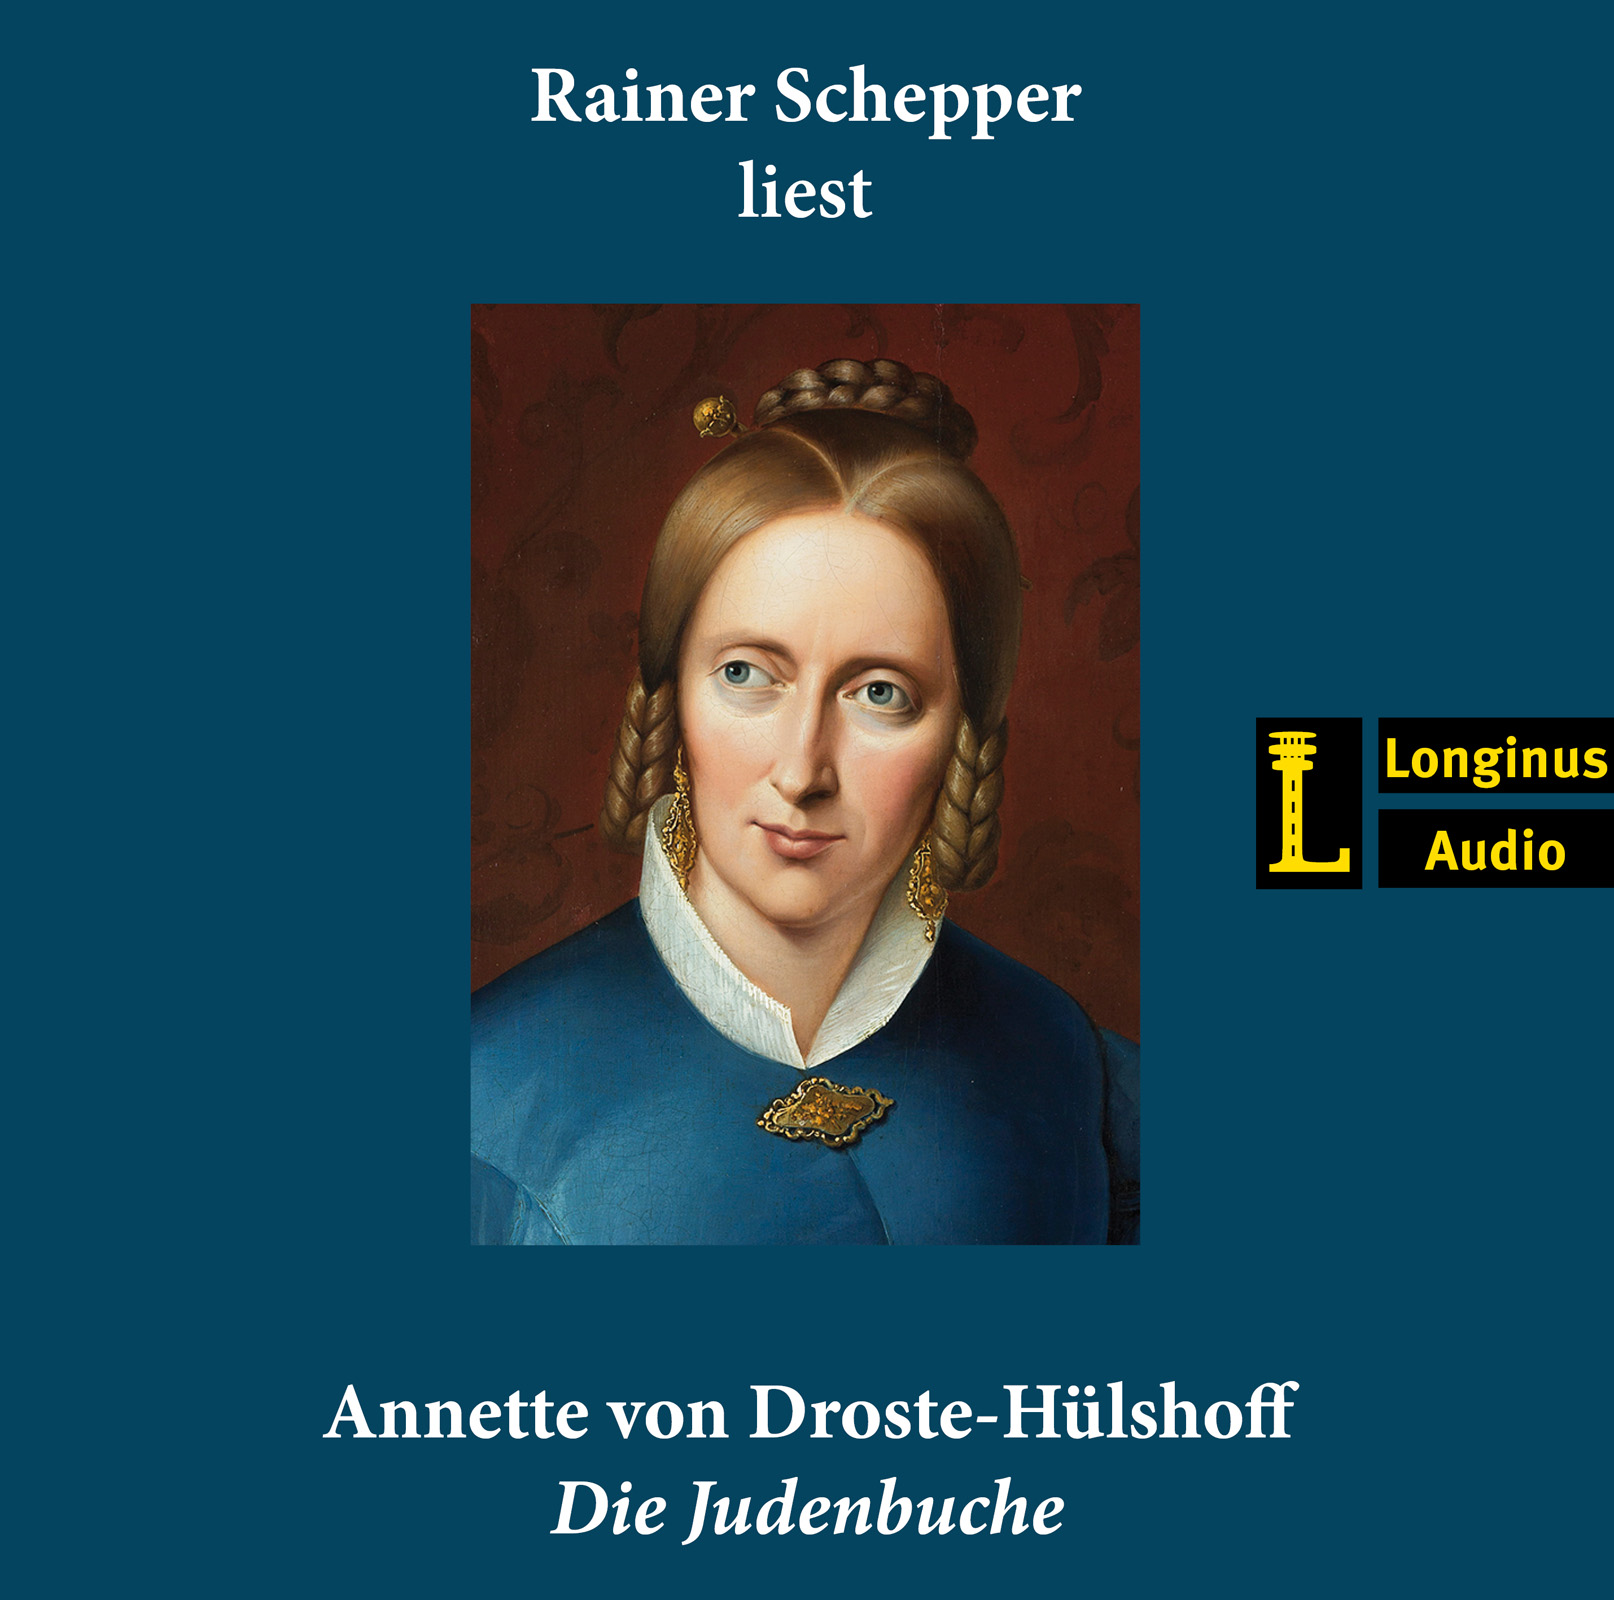 Rainer Schepper liest "Die Judenbuche" - Hörbuch